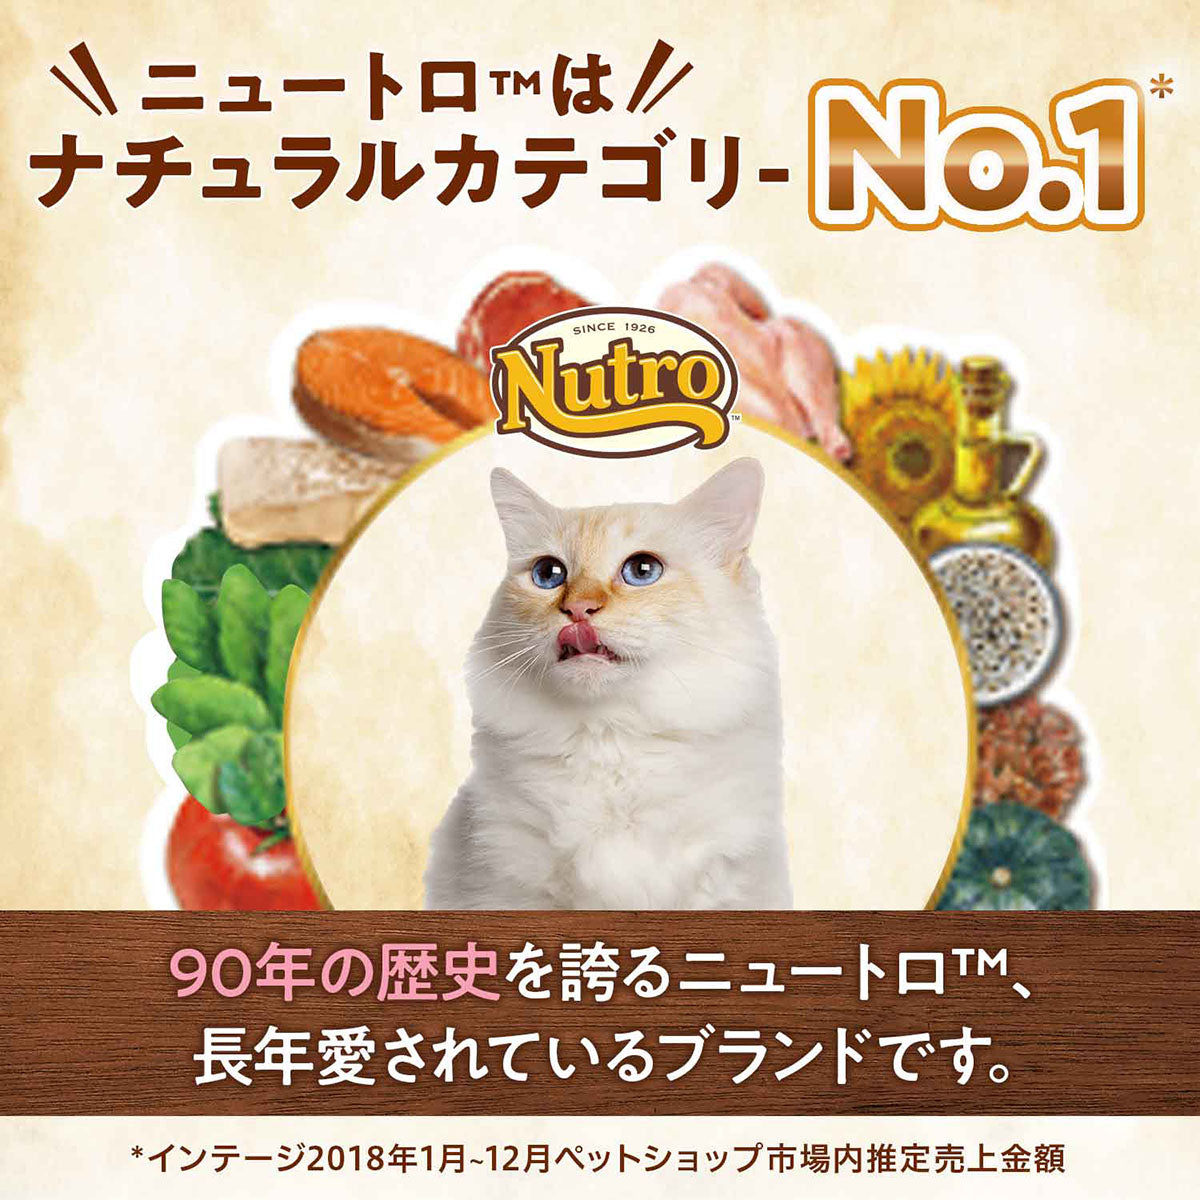 ニュートロ ナチュラルチョイス キャットフード 室内猫用 キトン チキン 500g